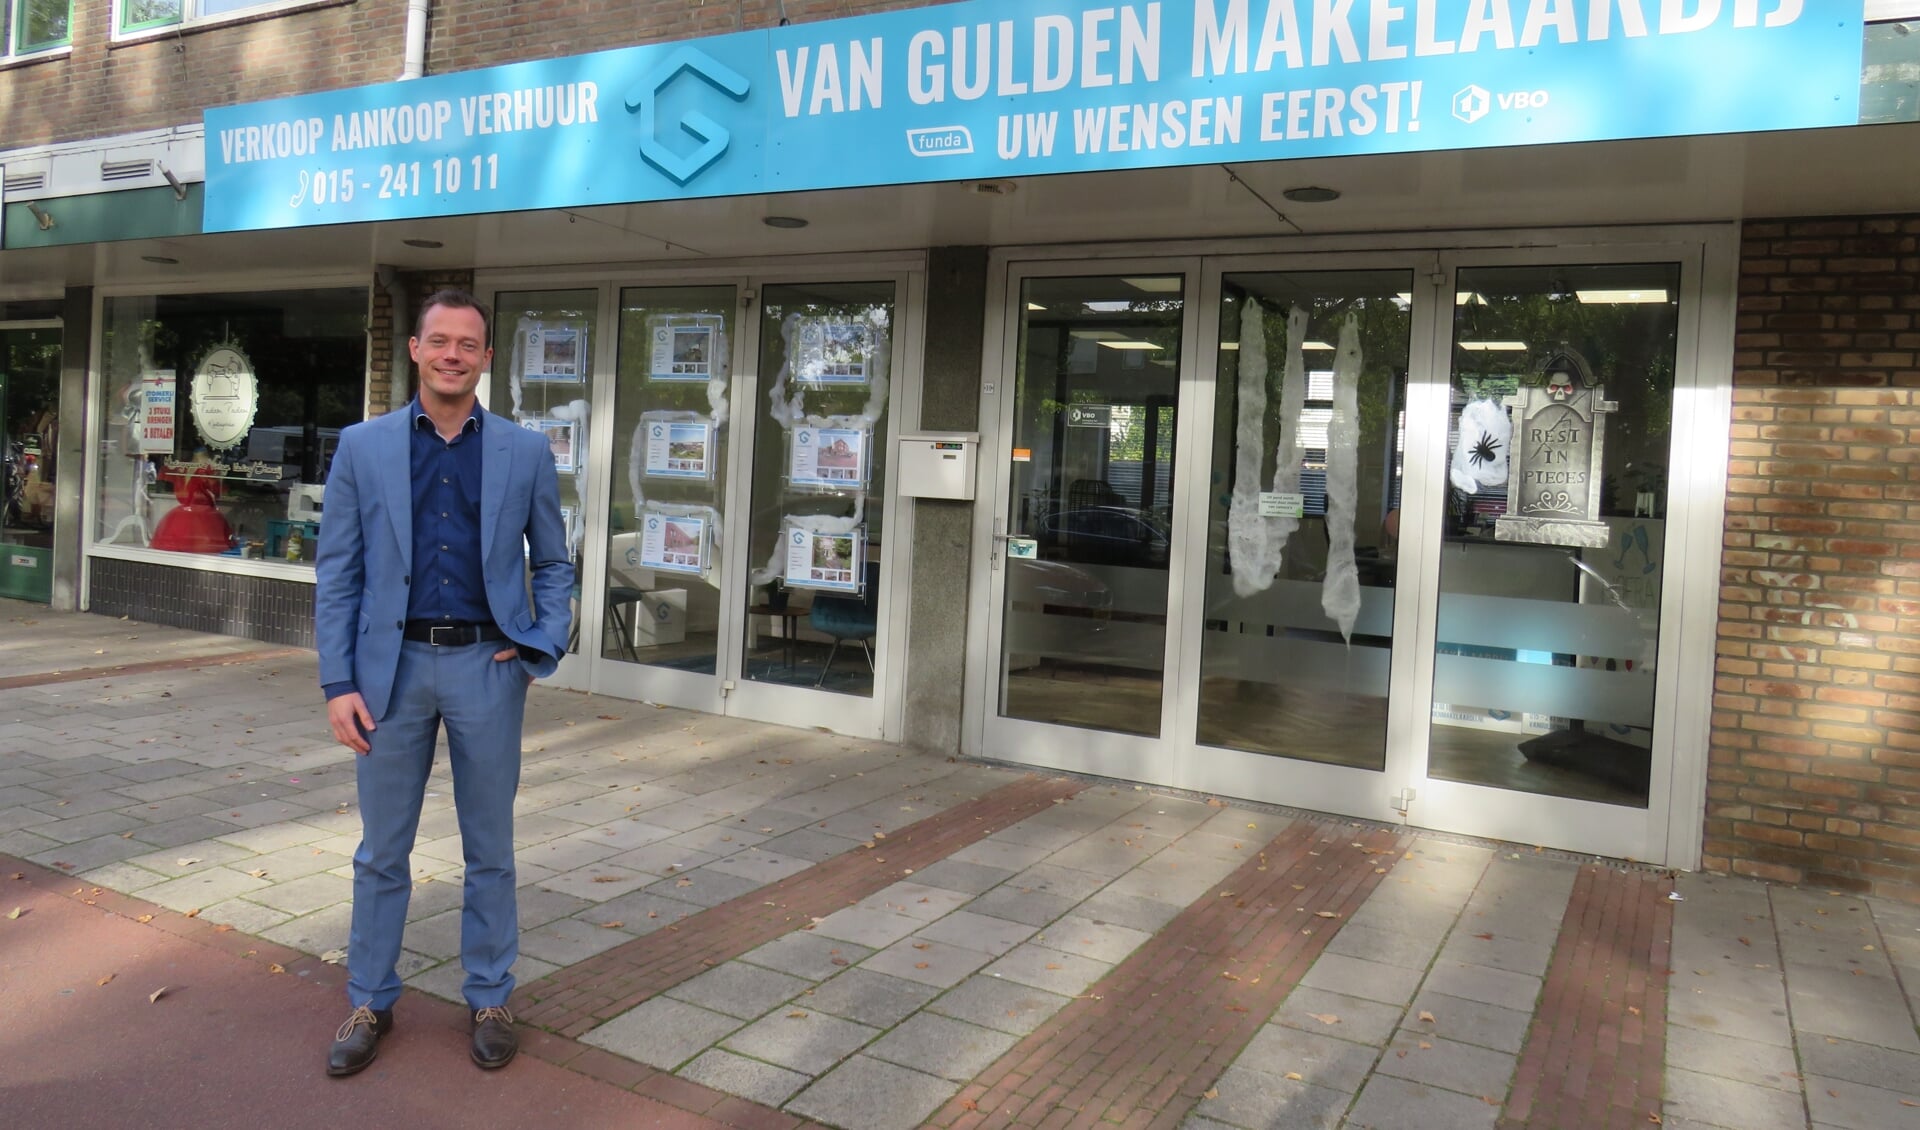 Martijn van Gulden voor zijn pand, recent voorzien van een herkenbaar gevelbord door RODI media zh